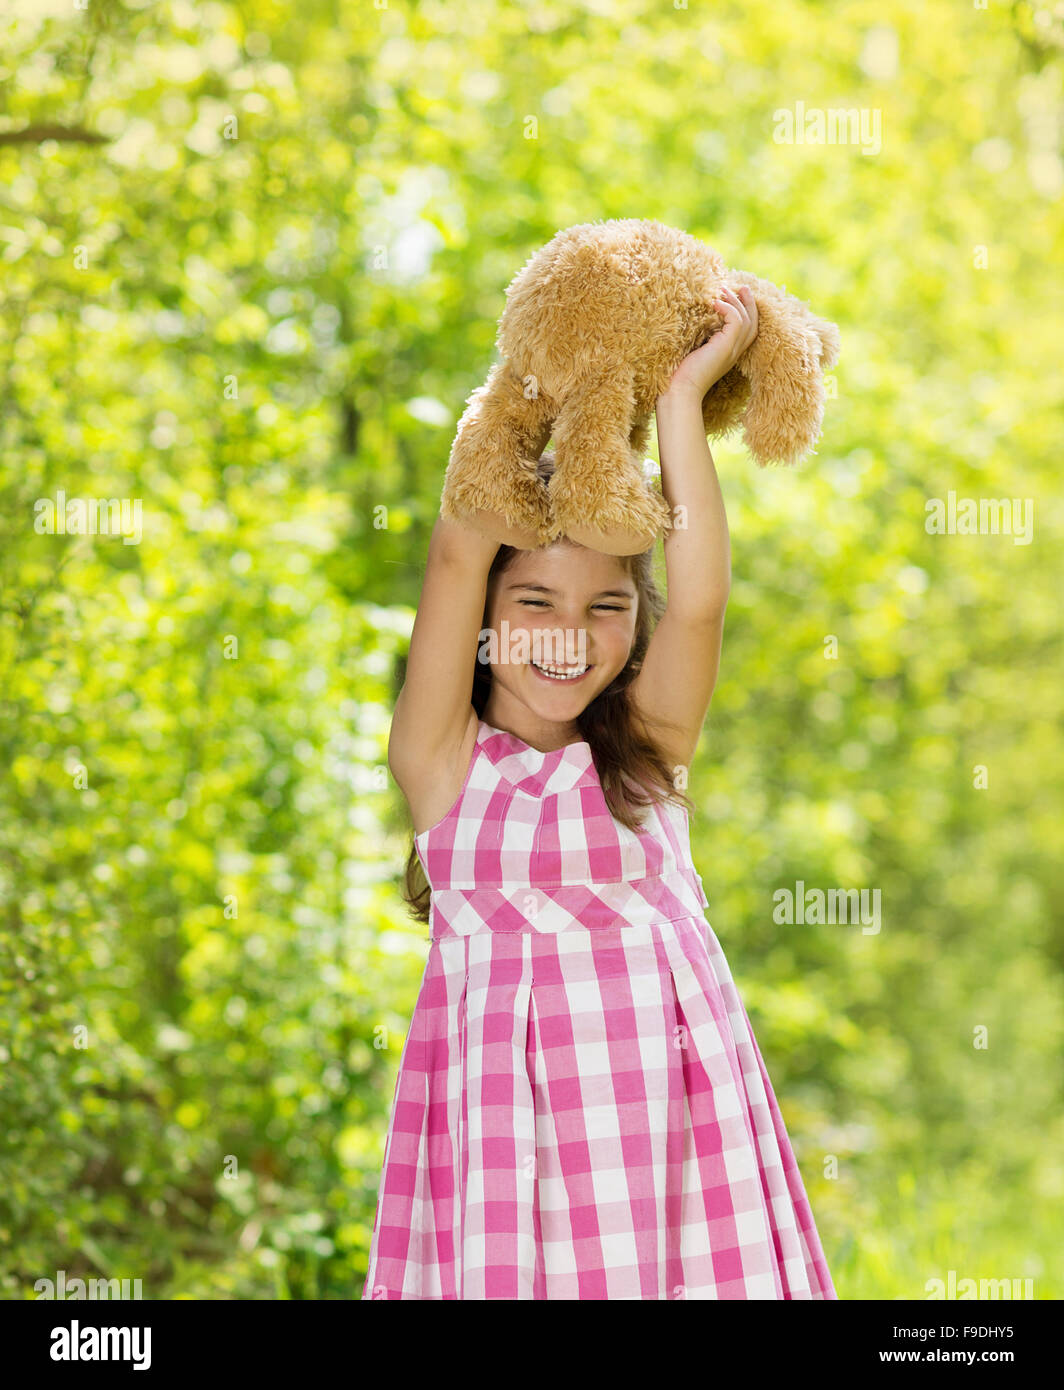 Niedliche kleine Mädchen im rosa Kleid spielt mit braunen Teddy in der grünen Natur Stockfoto